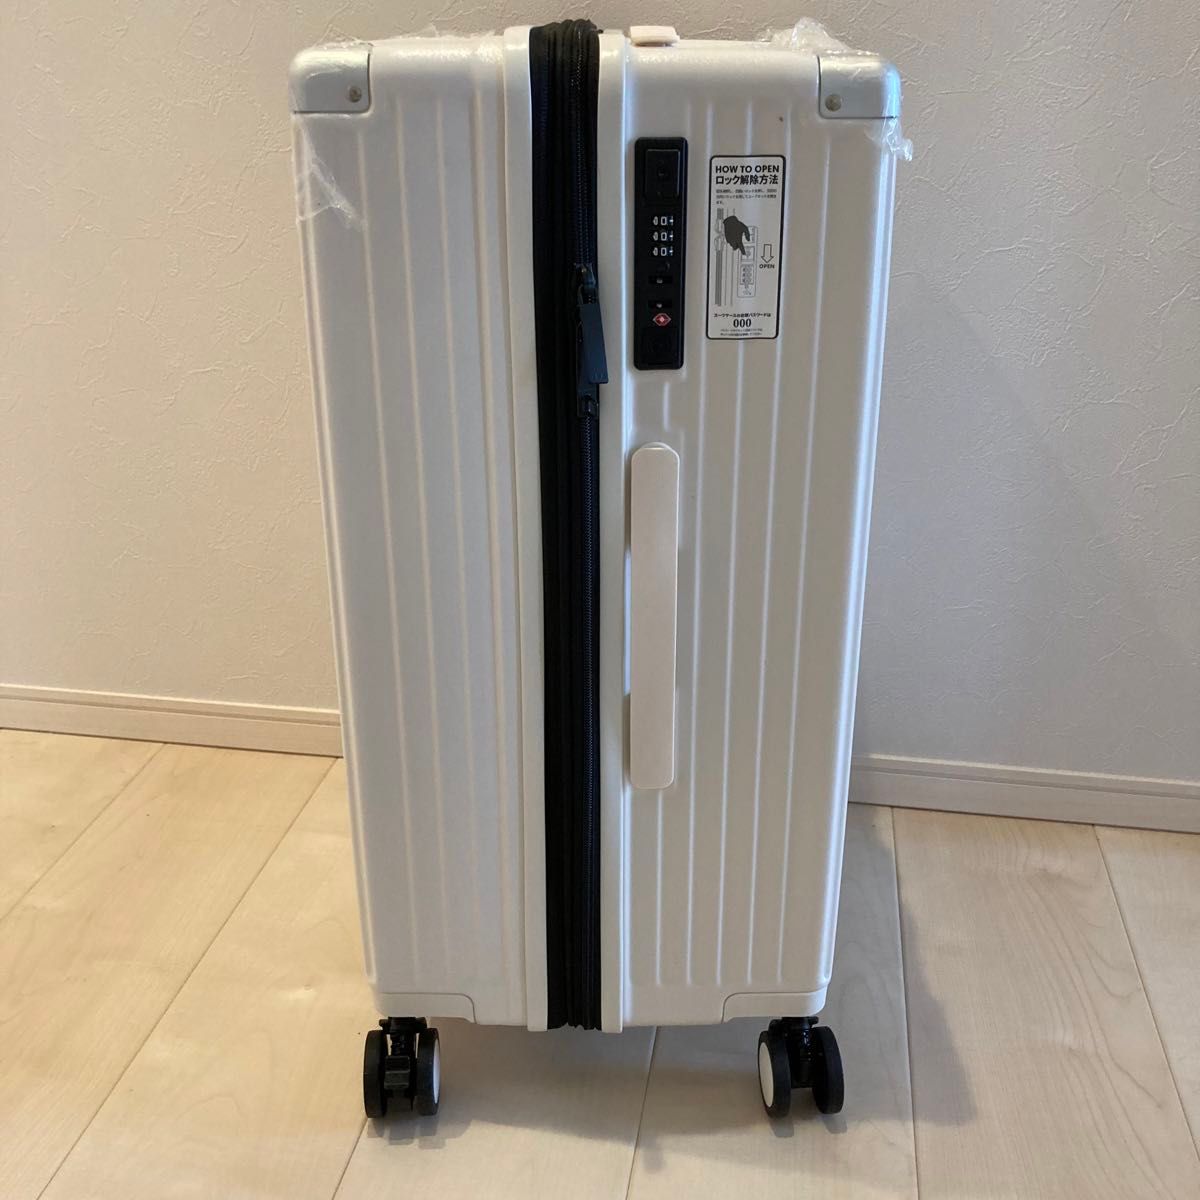 キャリーケース スーツケース キャリーバッグ カップホルダー  充電 ホワイト 旅行 ファスナー式 大型 出張